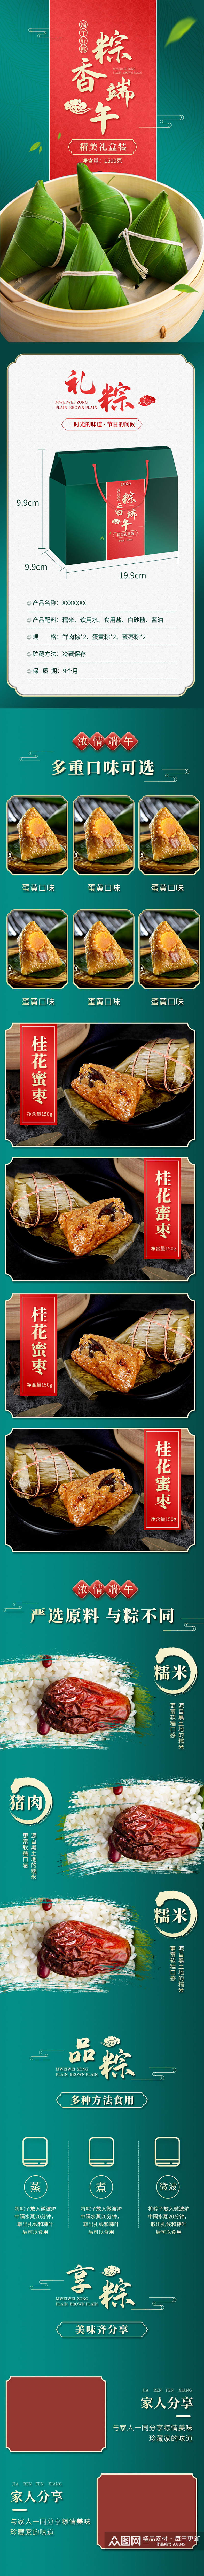 天猫端午节多种口味粽子礼盒详情描述素材